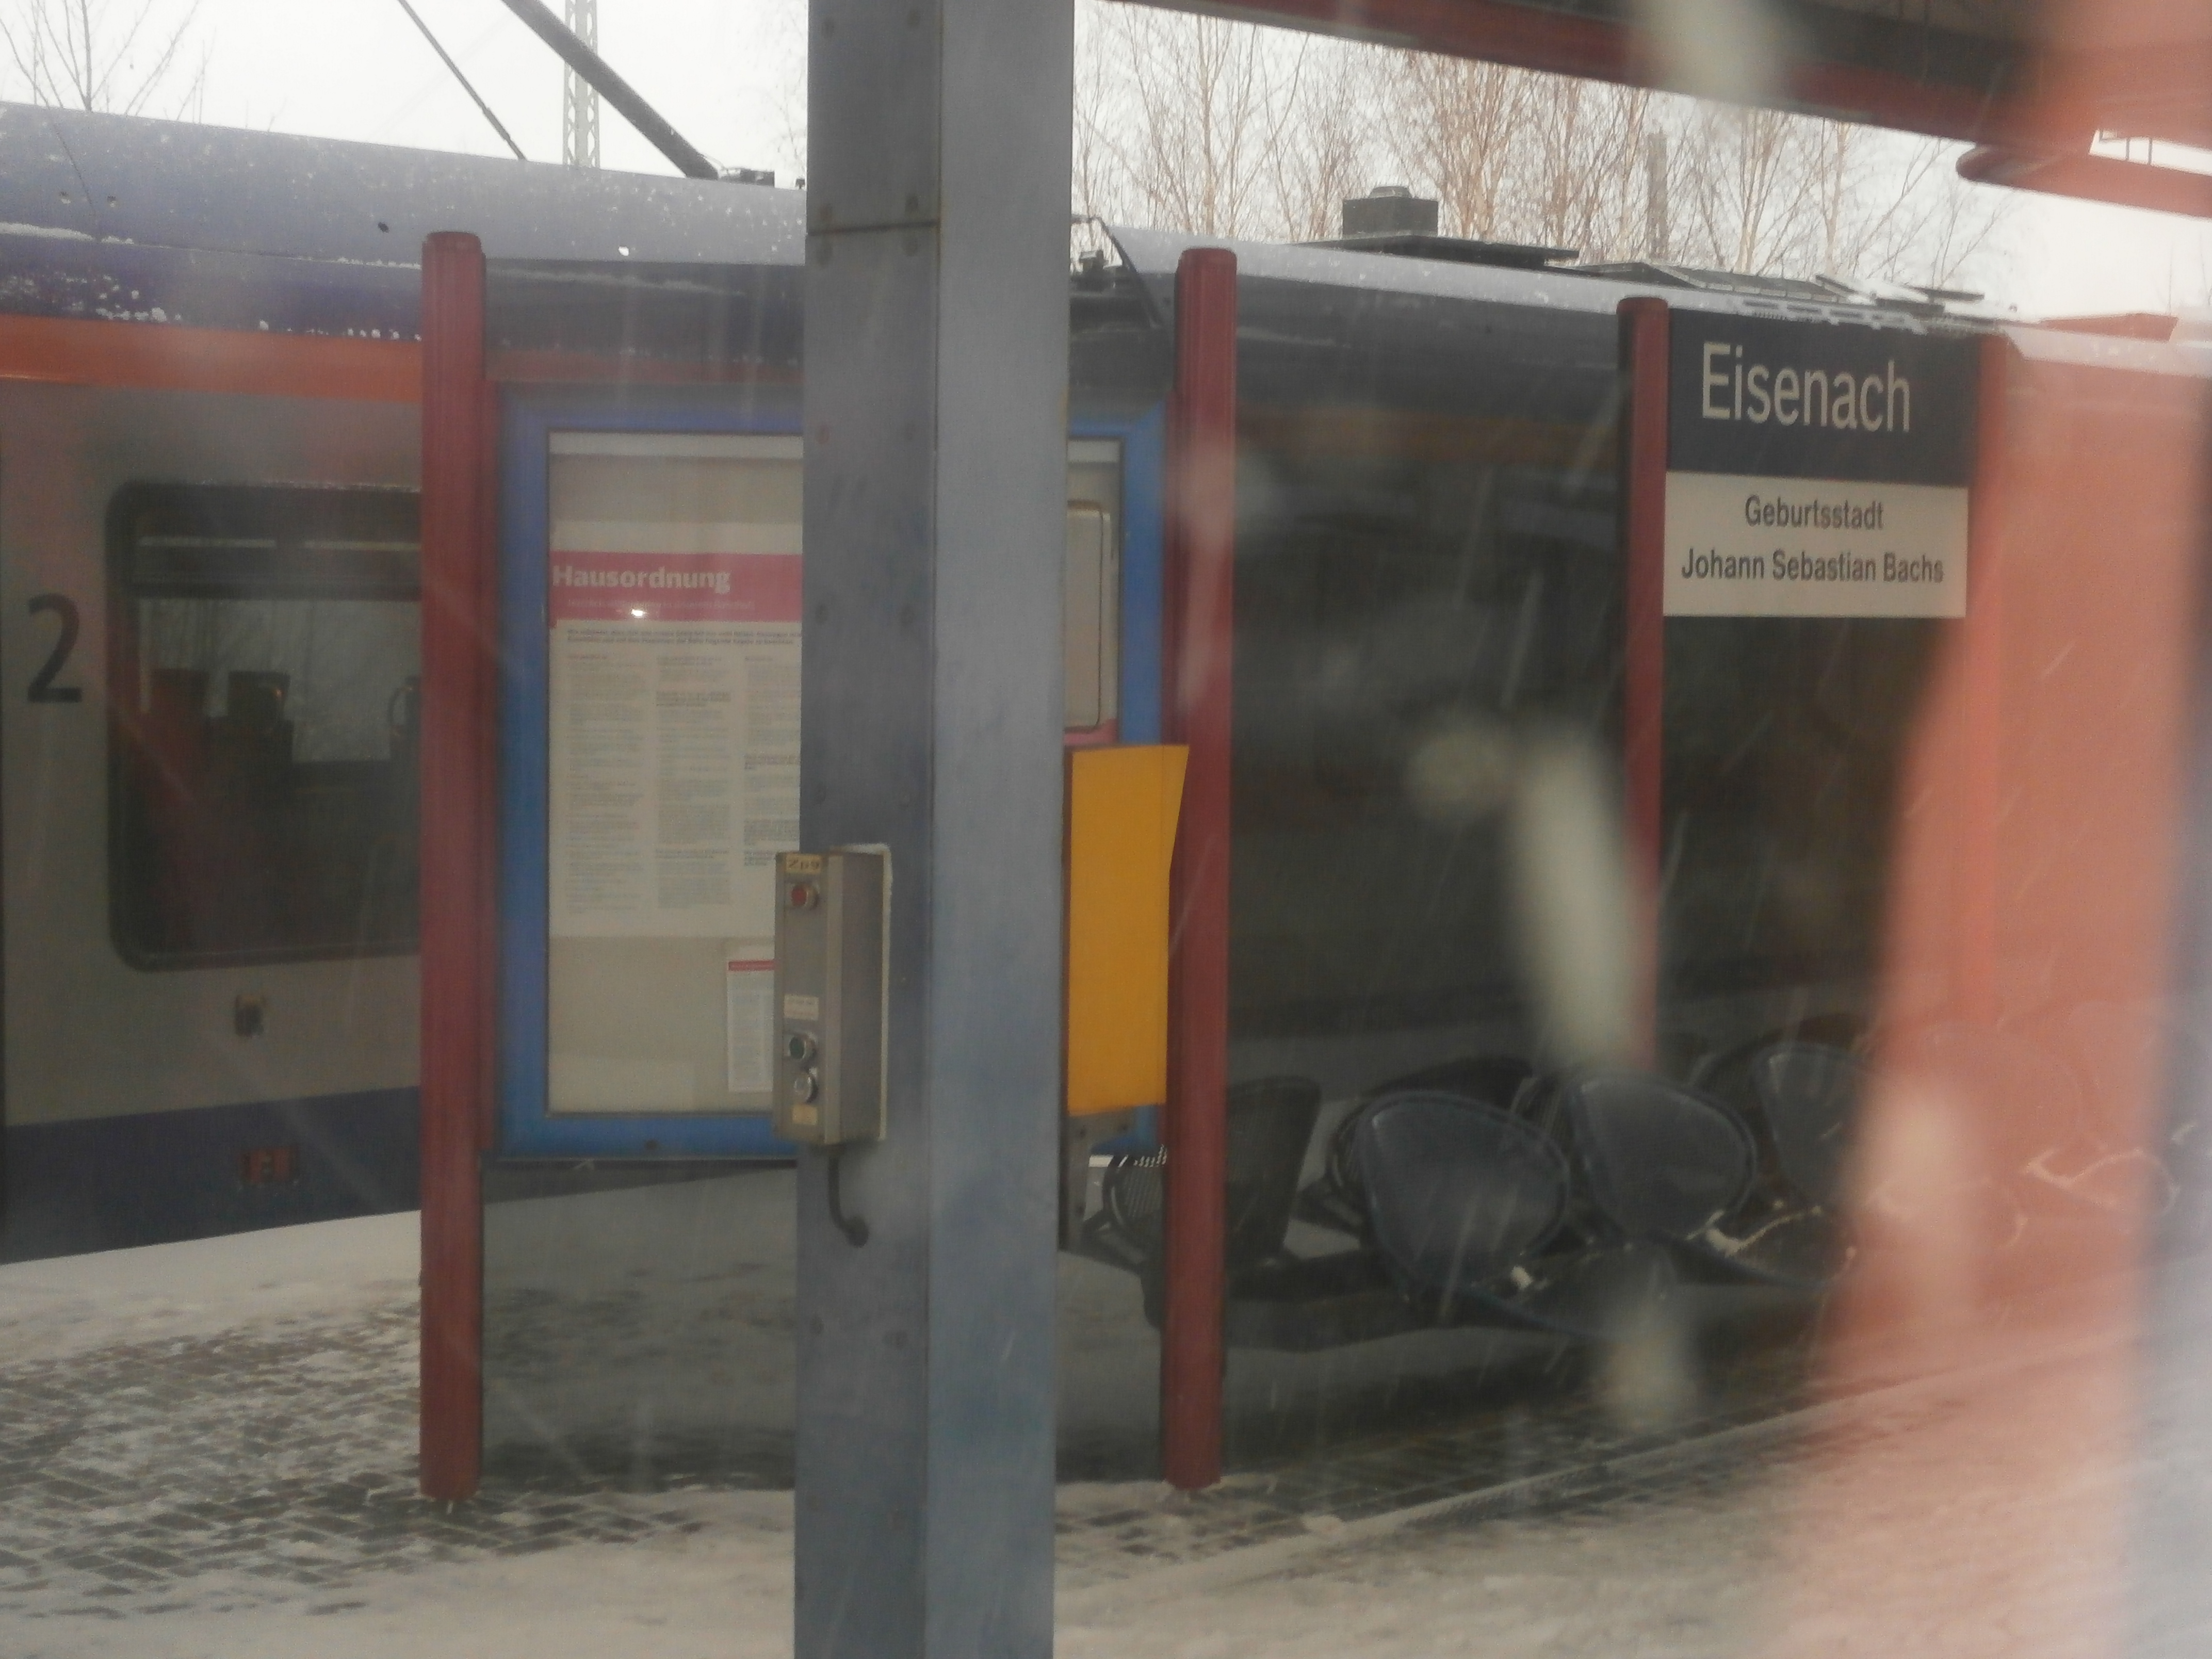 Bild 1 Georgen-Apotheke Am Bahnhof in Eisenach